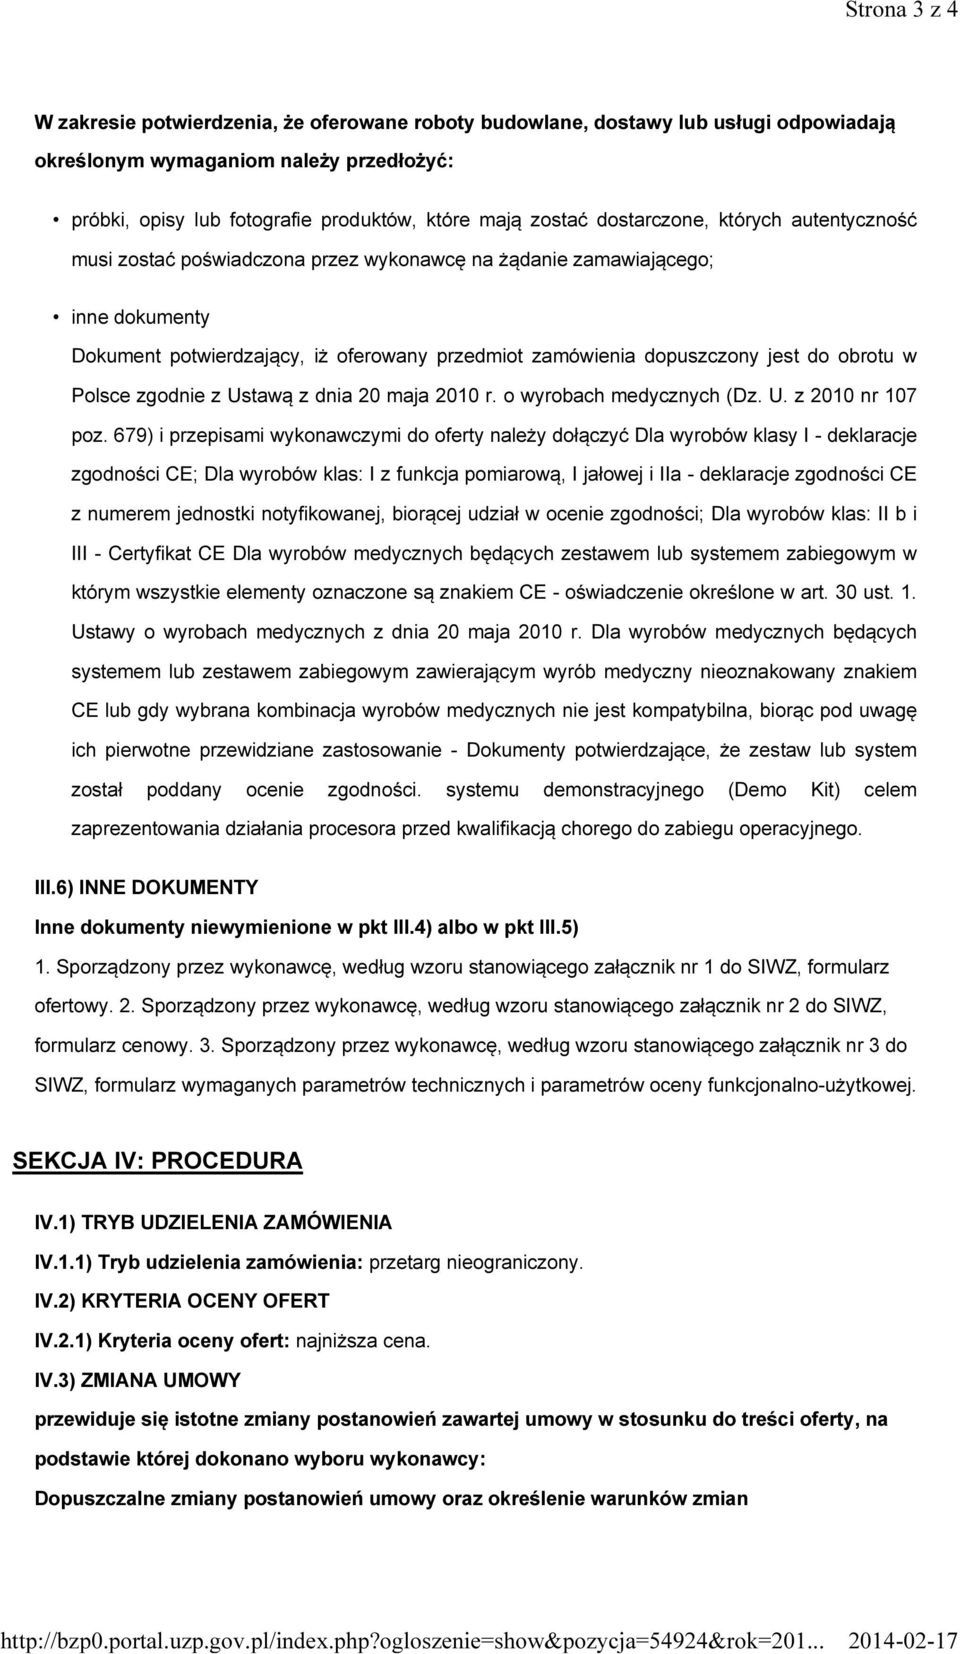 obrotu w Polsce zgodnie z Ustawą z dnia 20 maja 2010 r. o wyrobach medycznych (Dz. U. z 2010 nr 107 poz.